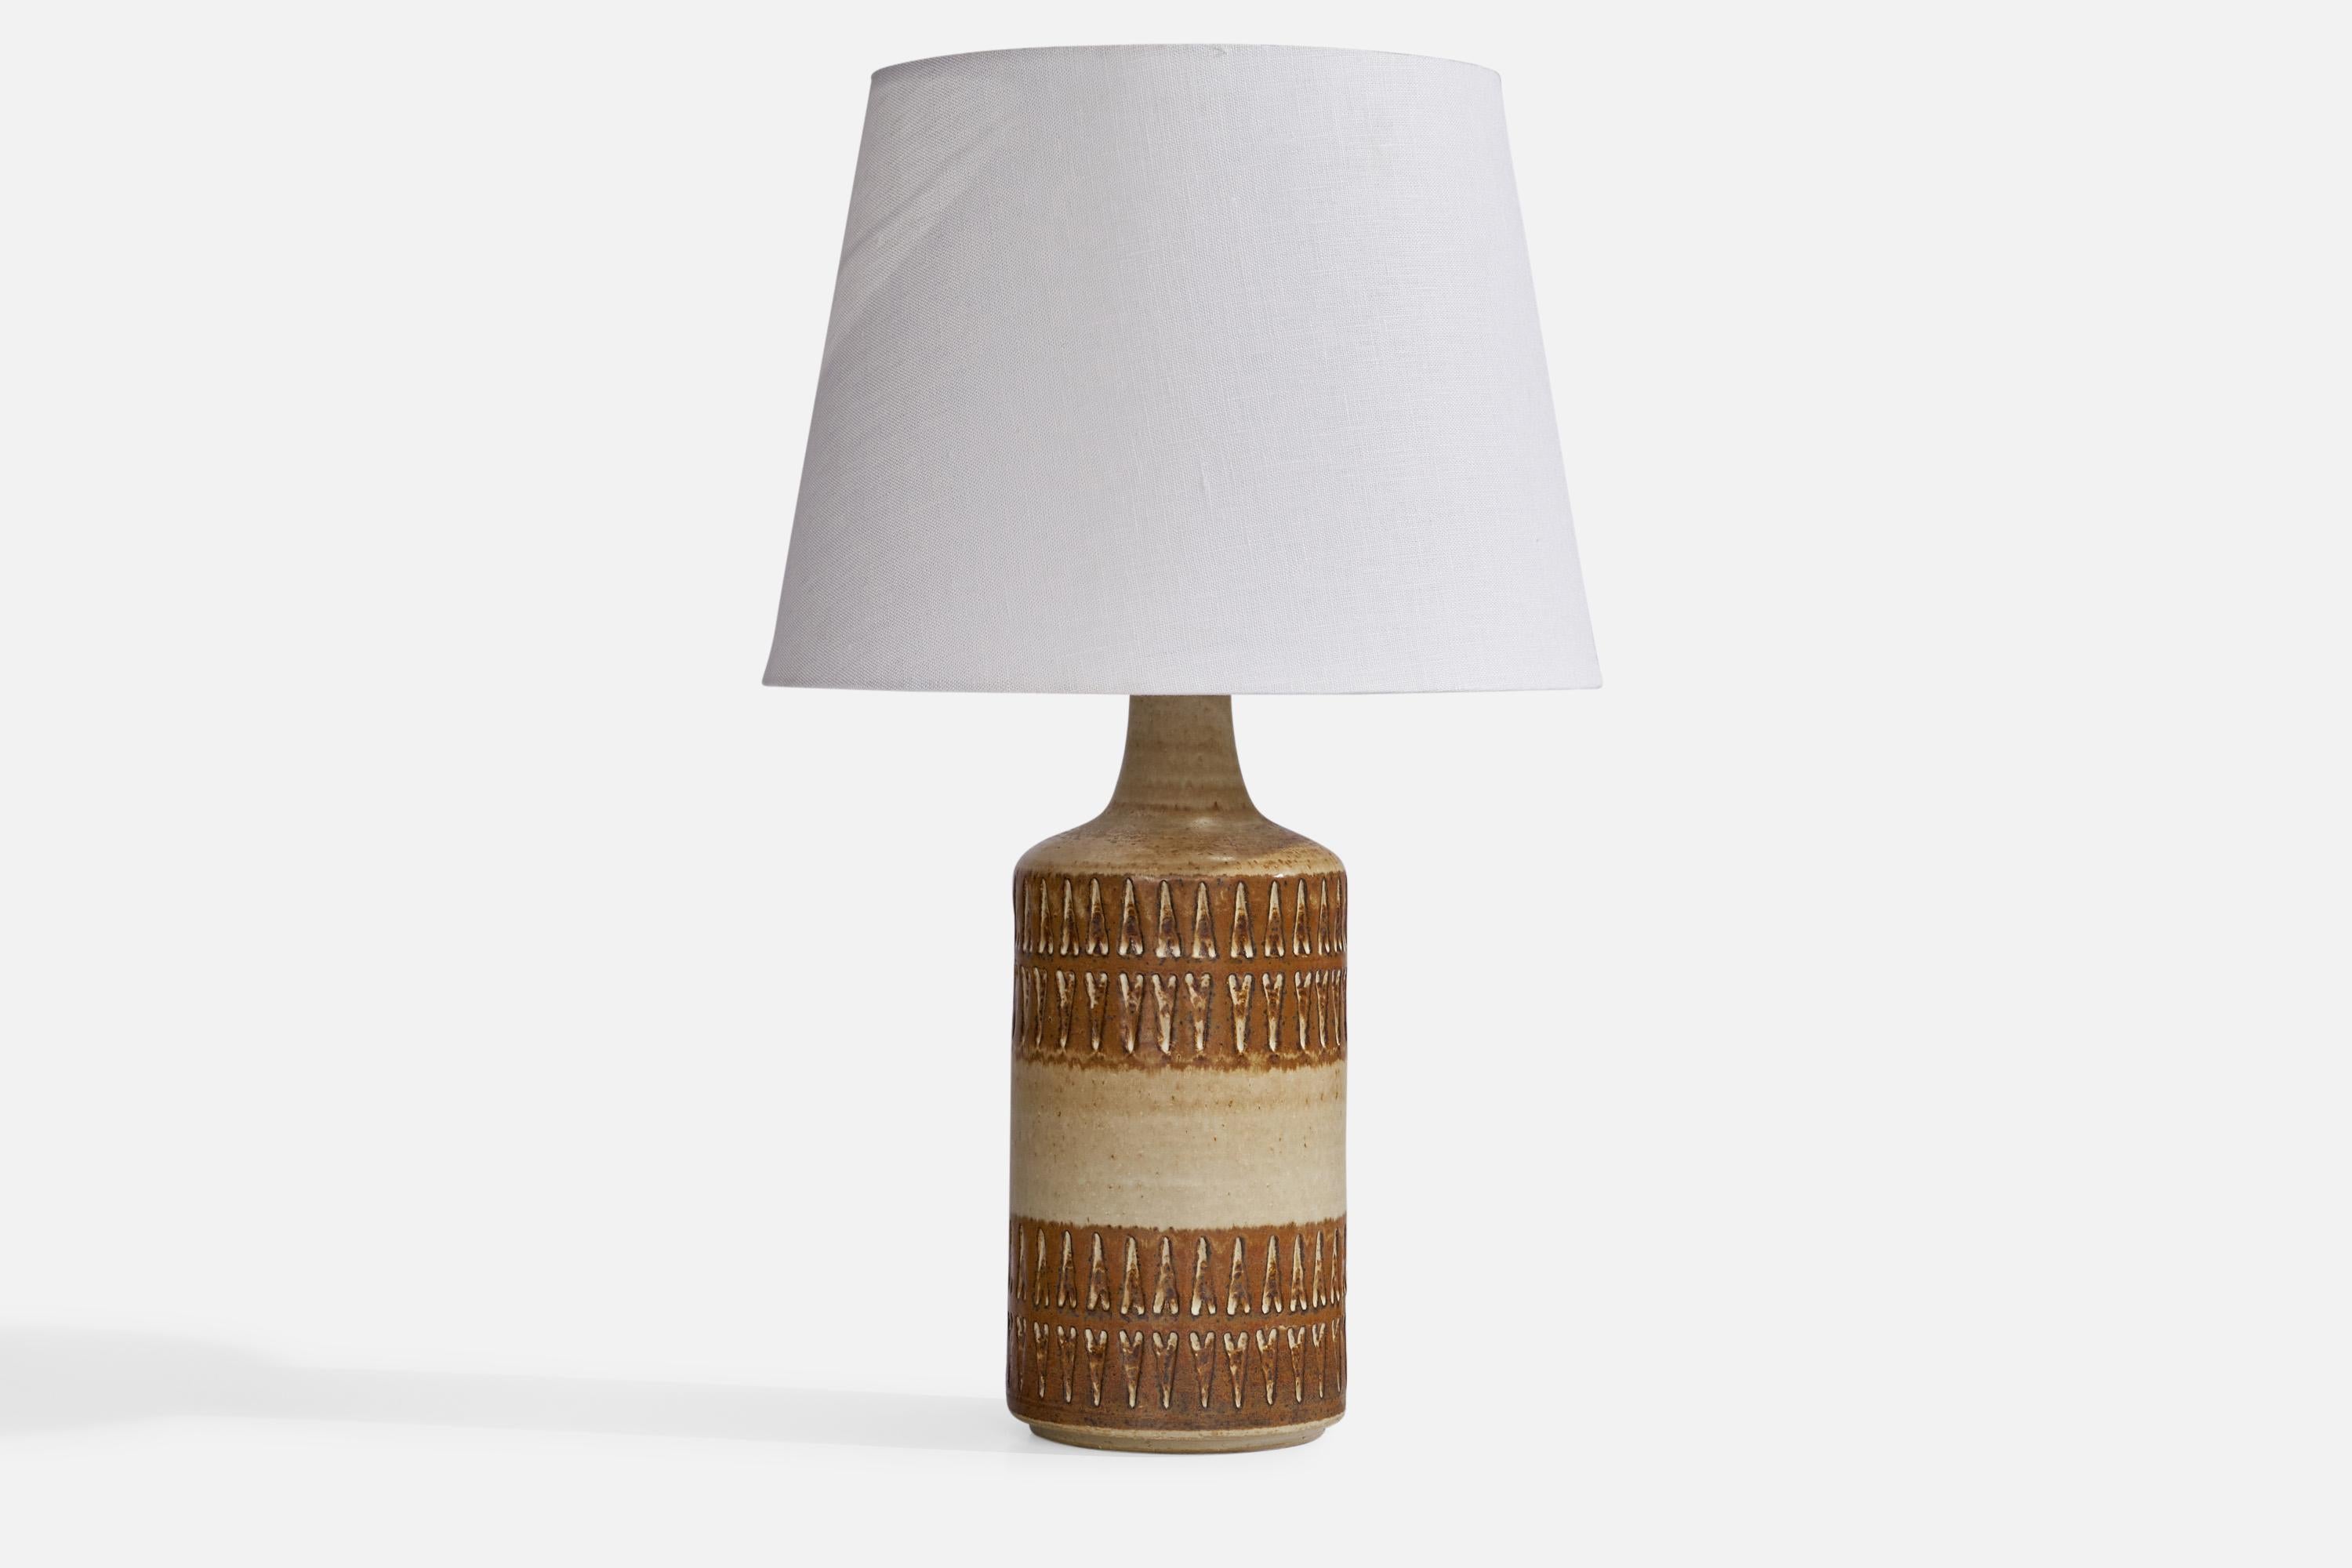 Tischlampe aus braunem und beige glasiertem Steingut, entworfen und hergestellt von Søholm, Dänemark, 1960er Jahre.
 
Abmessungen der Lampe (Zoll): 14,2